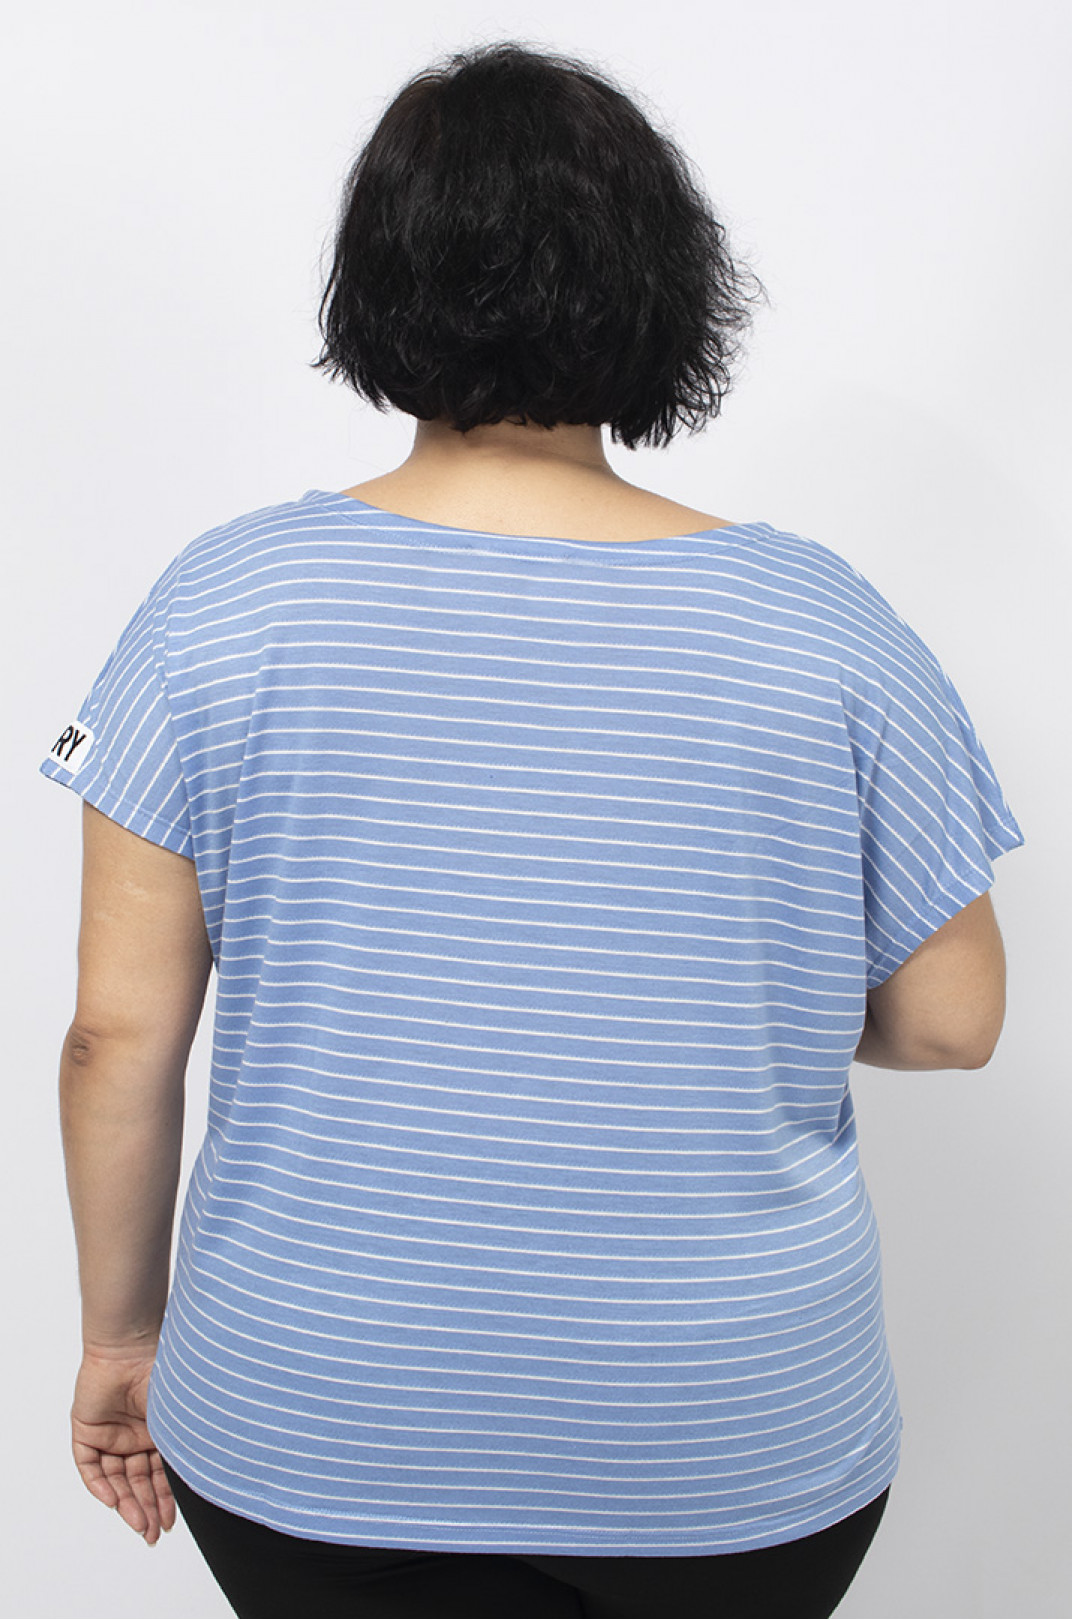 Короткая трикотажная футболка в цветную горизонтальную полоску супер батал